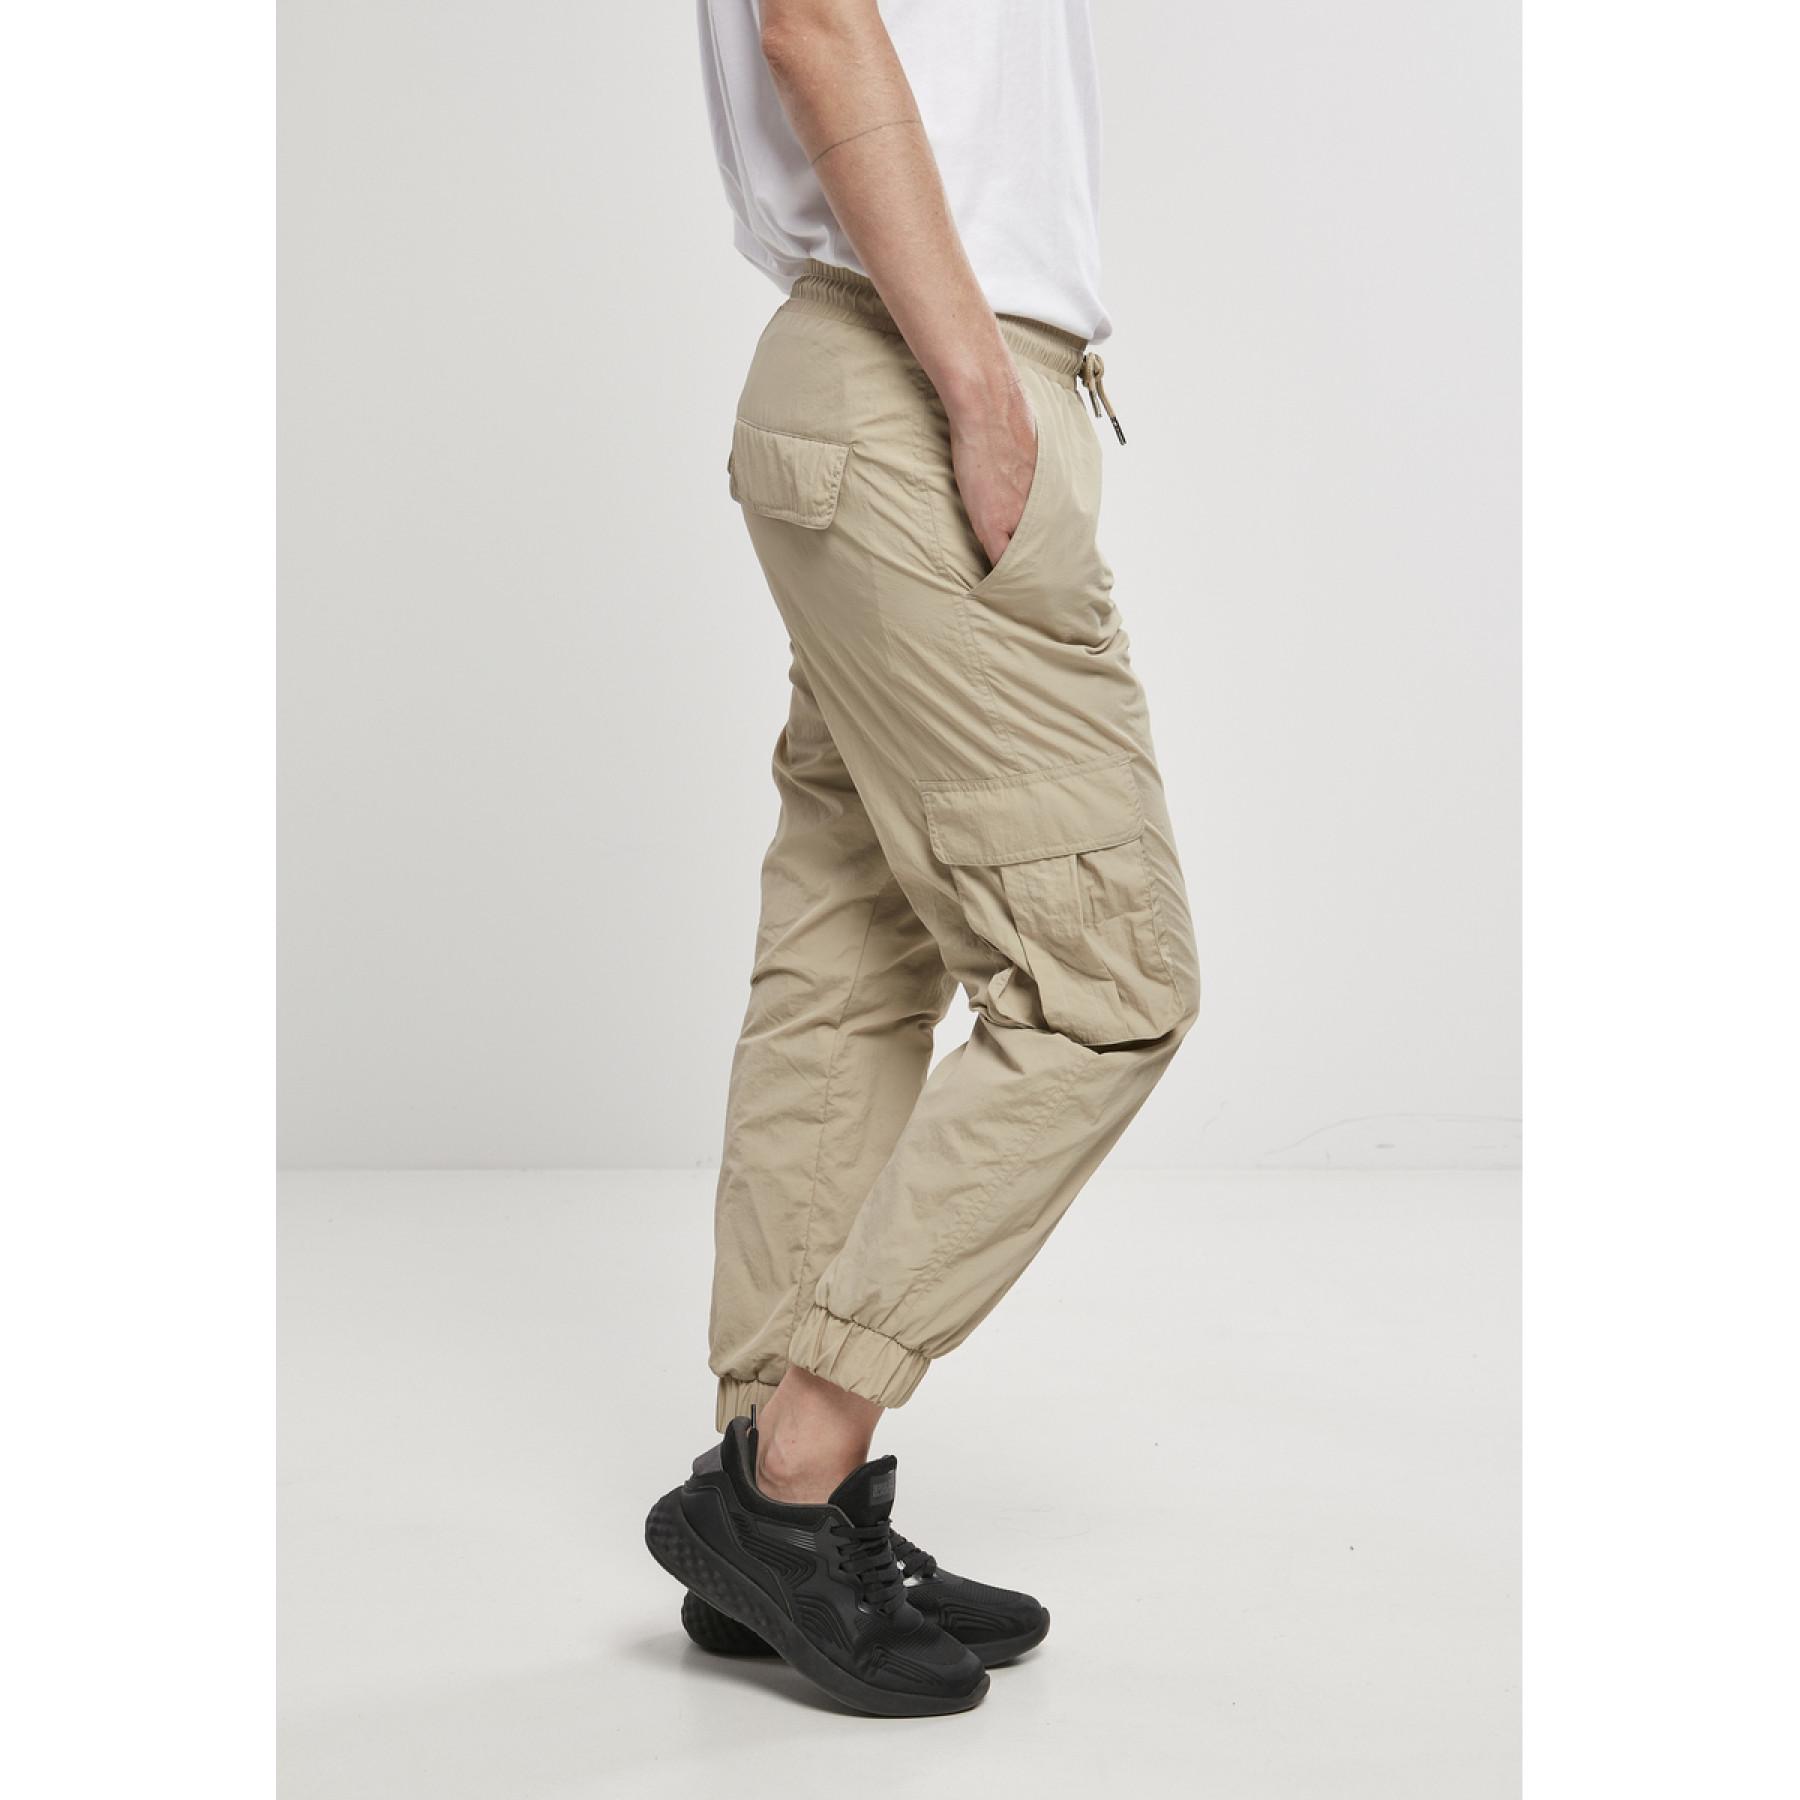 Pantalon cargo femme Urban Classics high waist crinkle